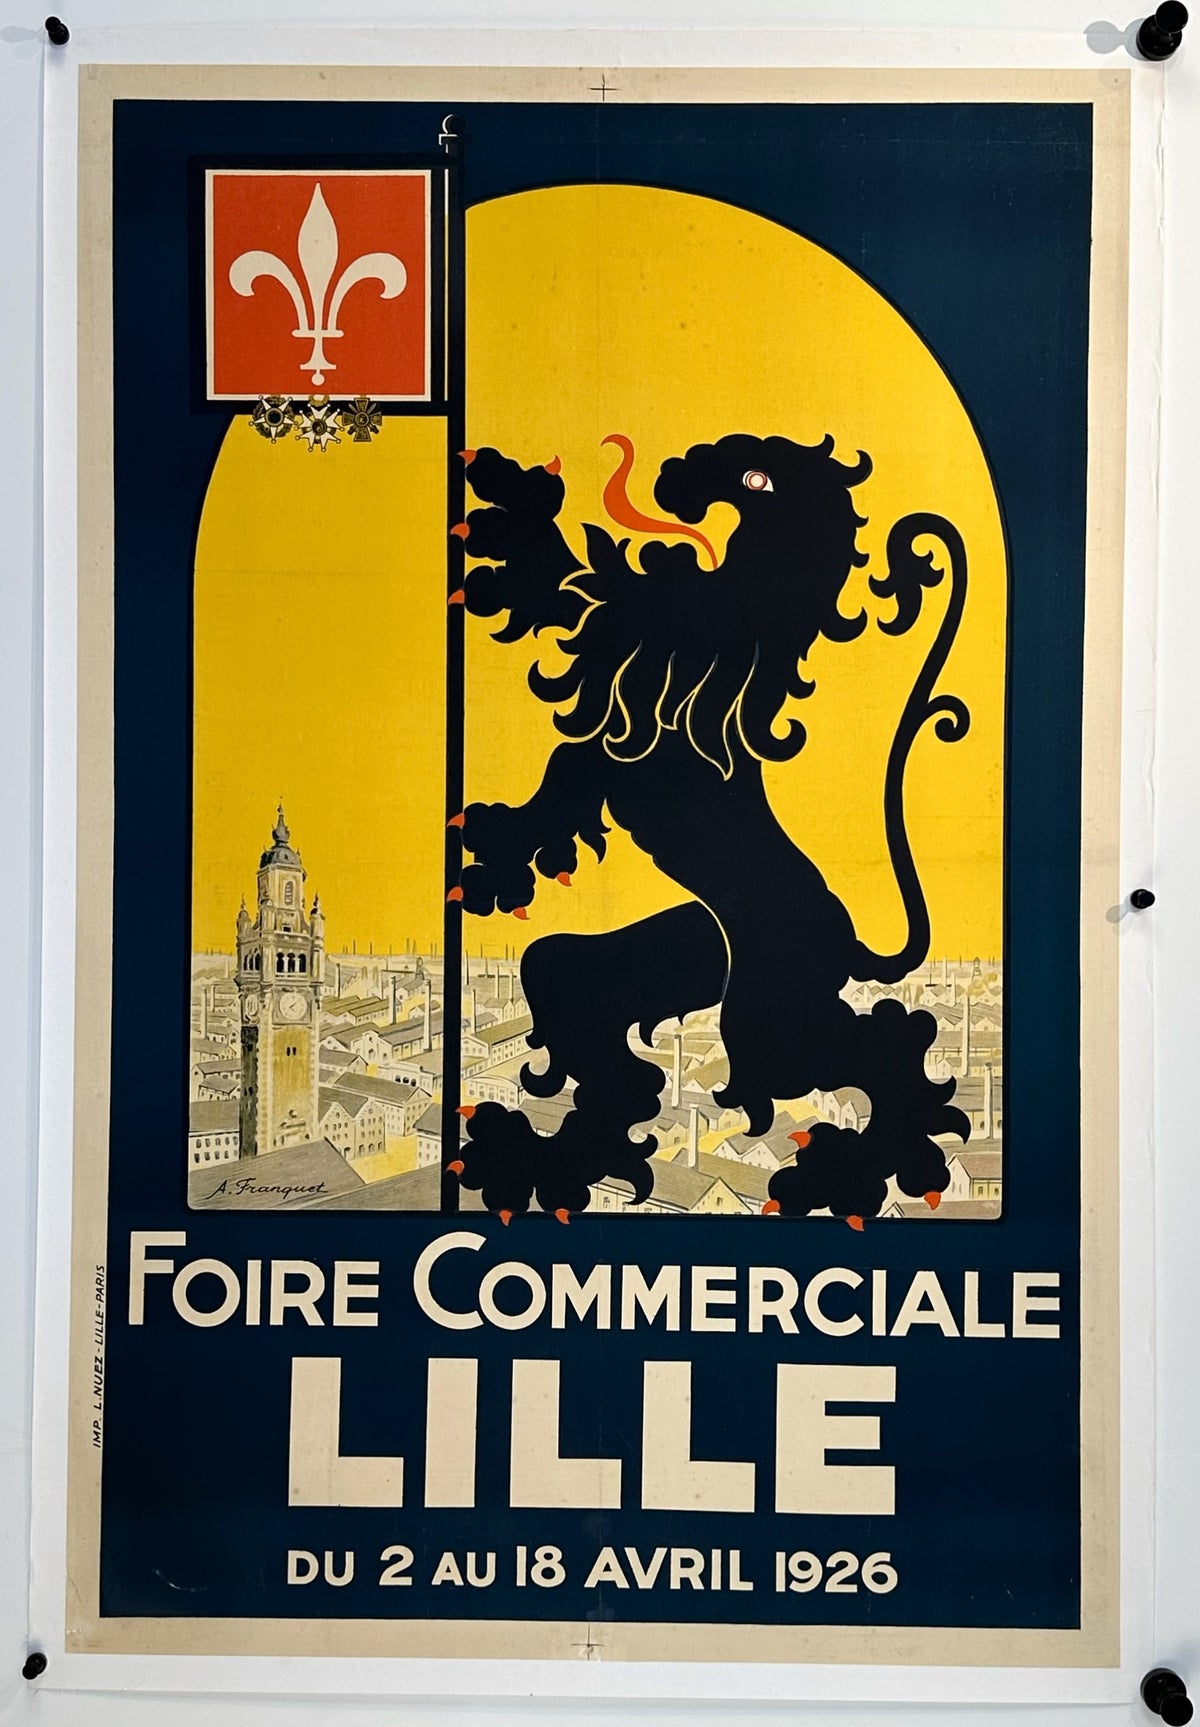 Foire Commercial Lille - Authentic Vintage Poster